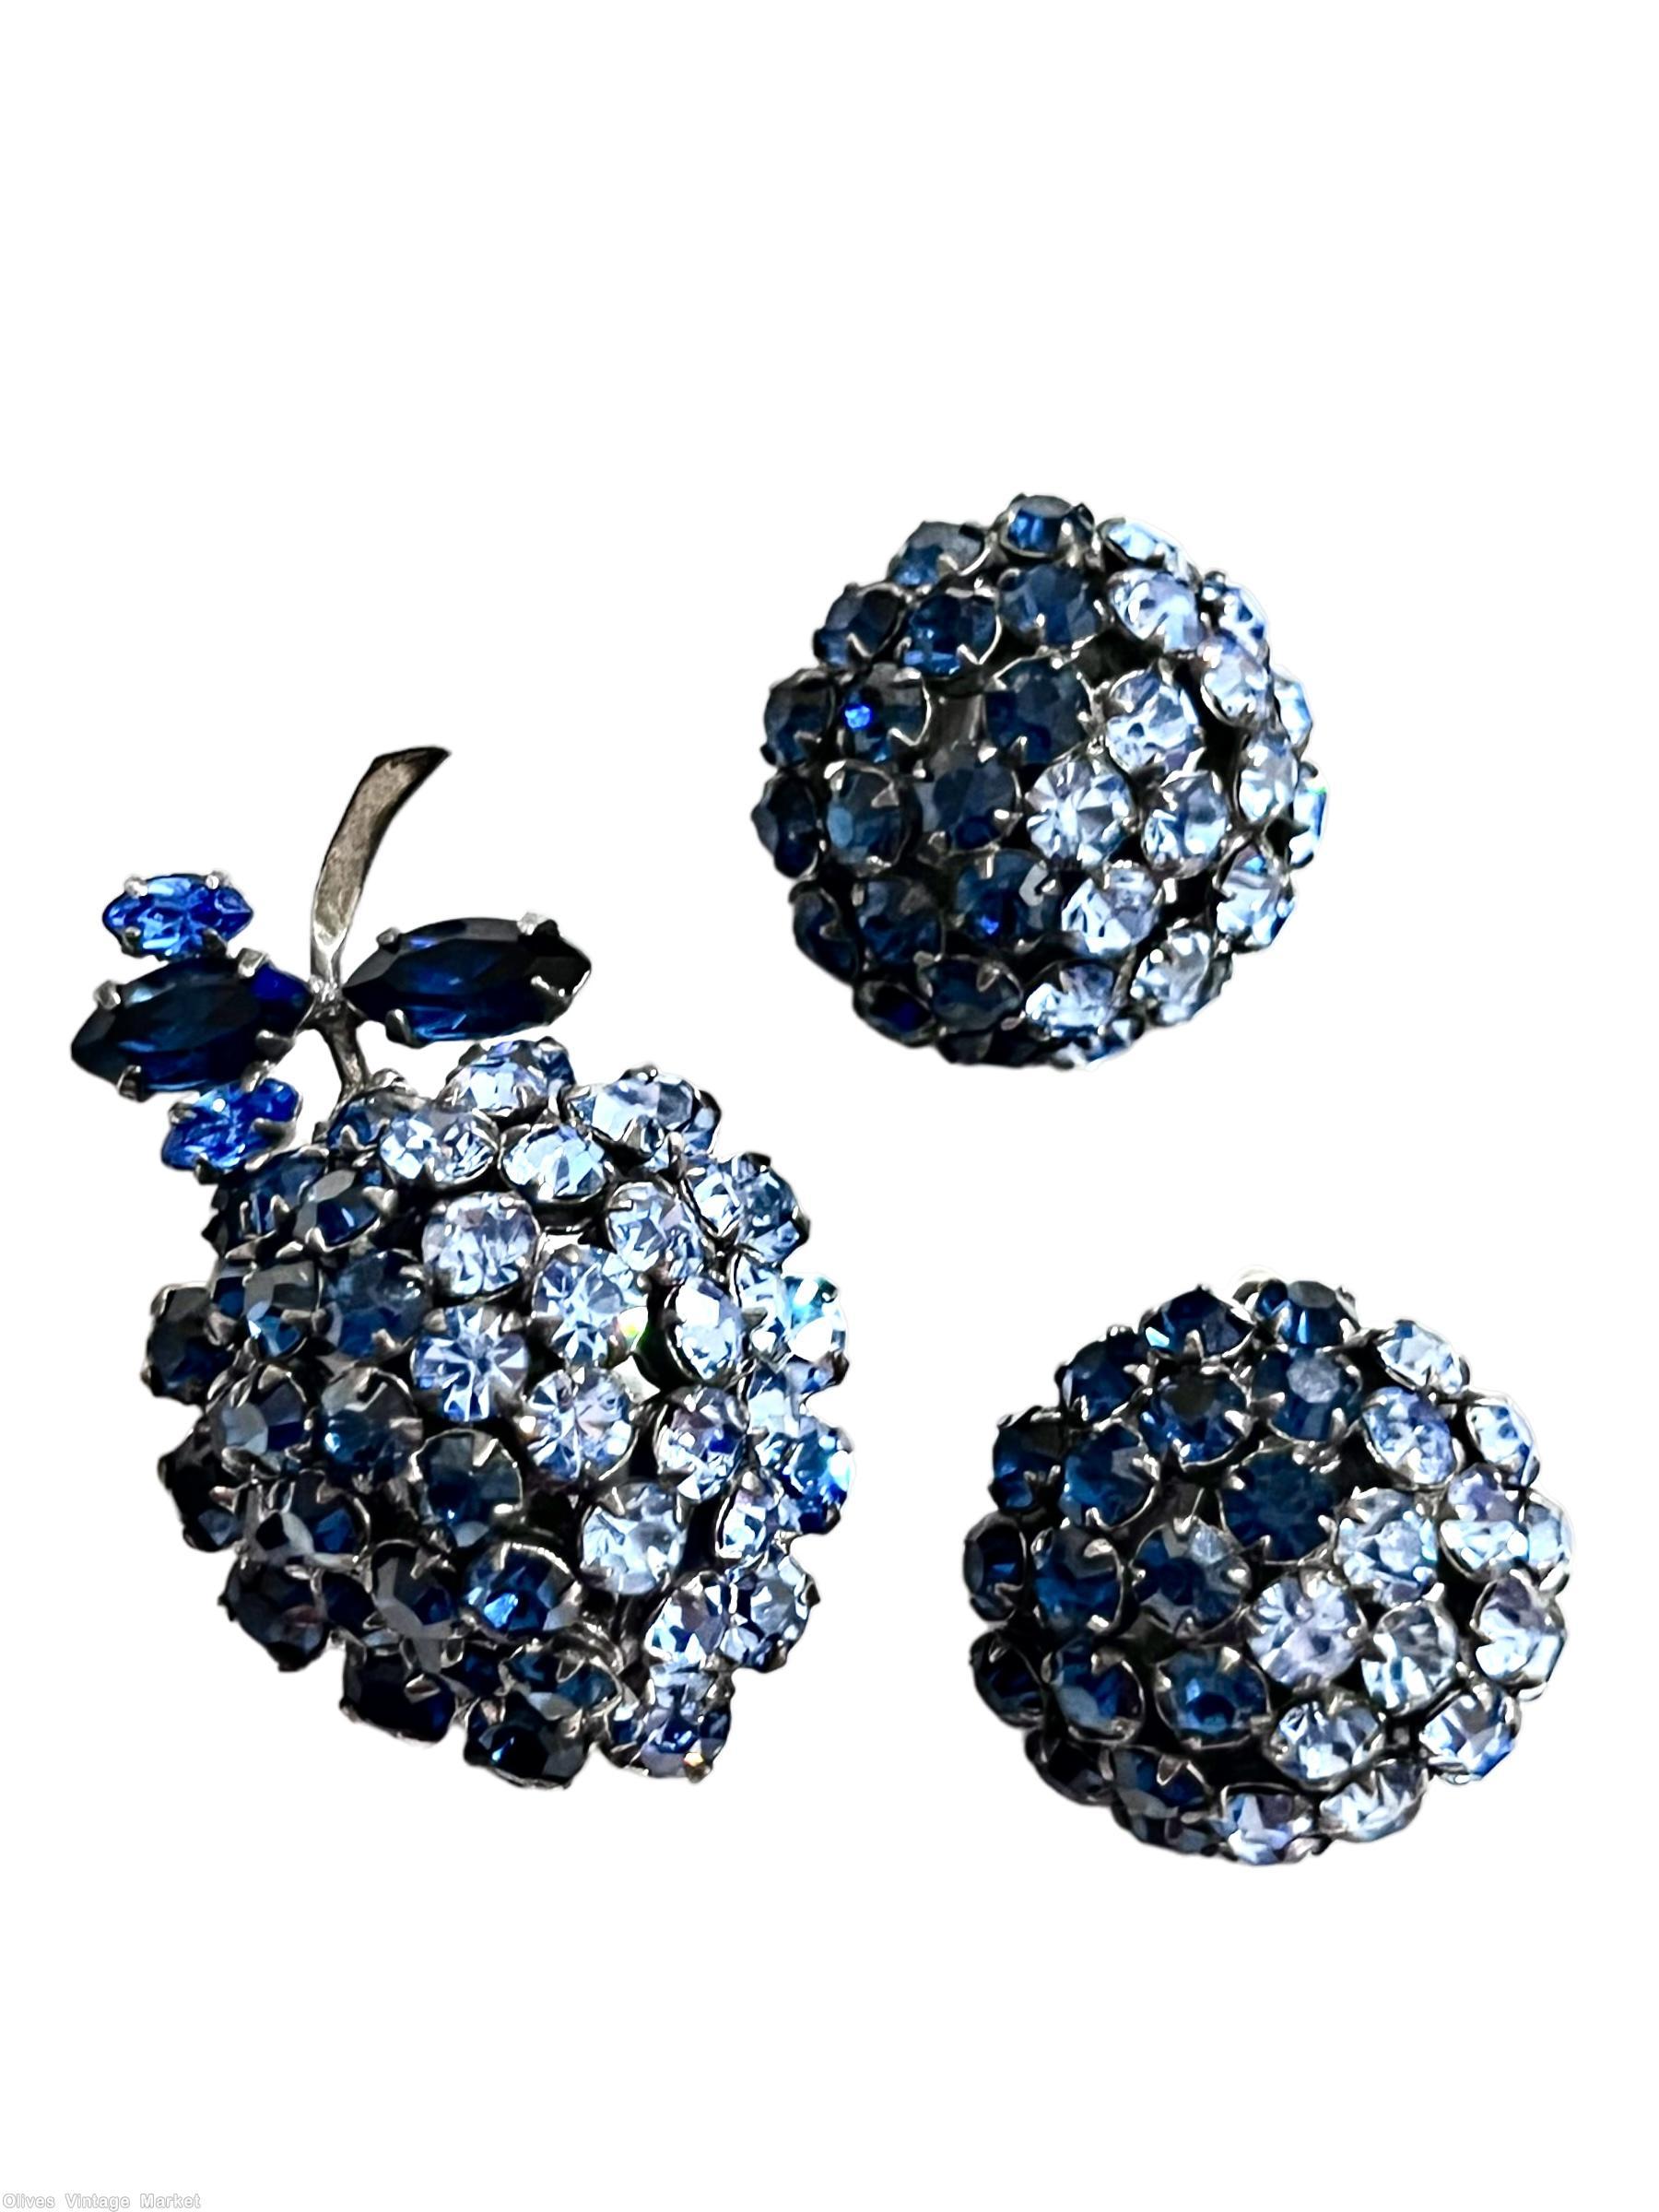 Schreiner short stem strawberry pin blue ice blue gunmetal back jewelry